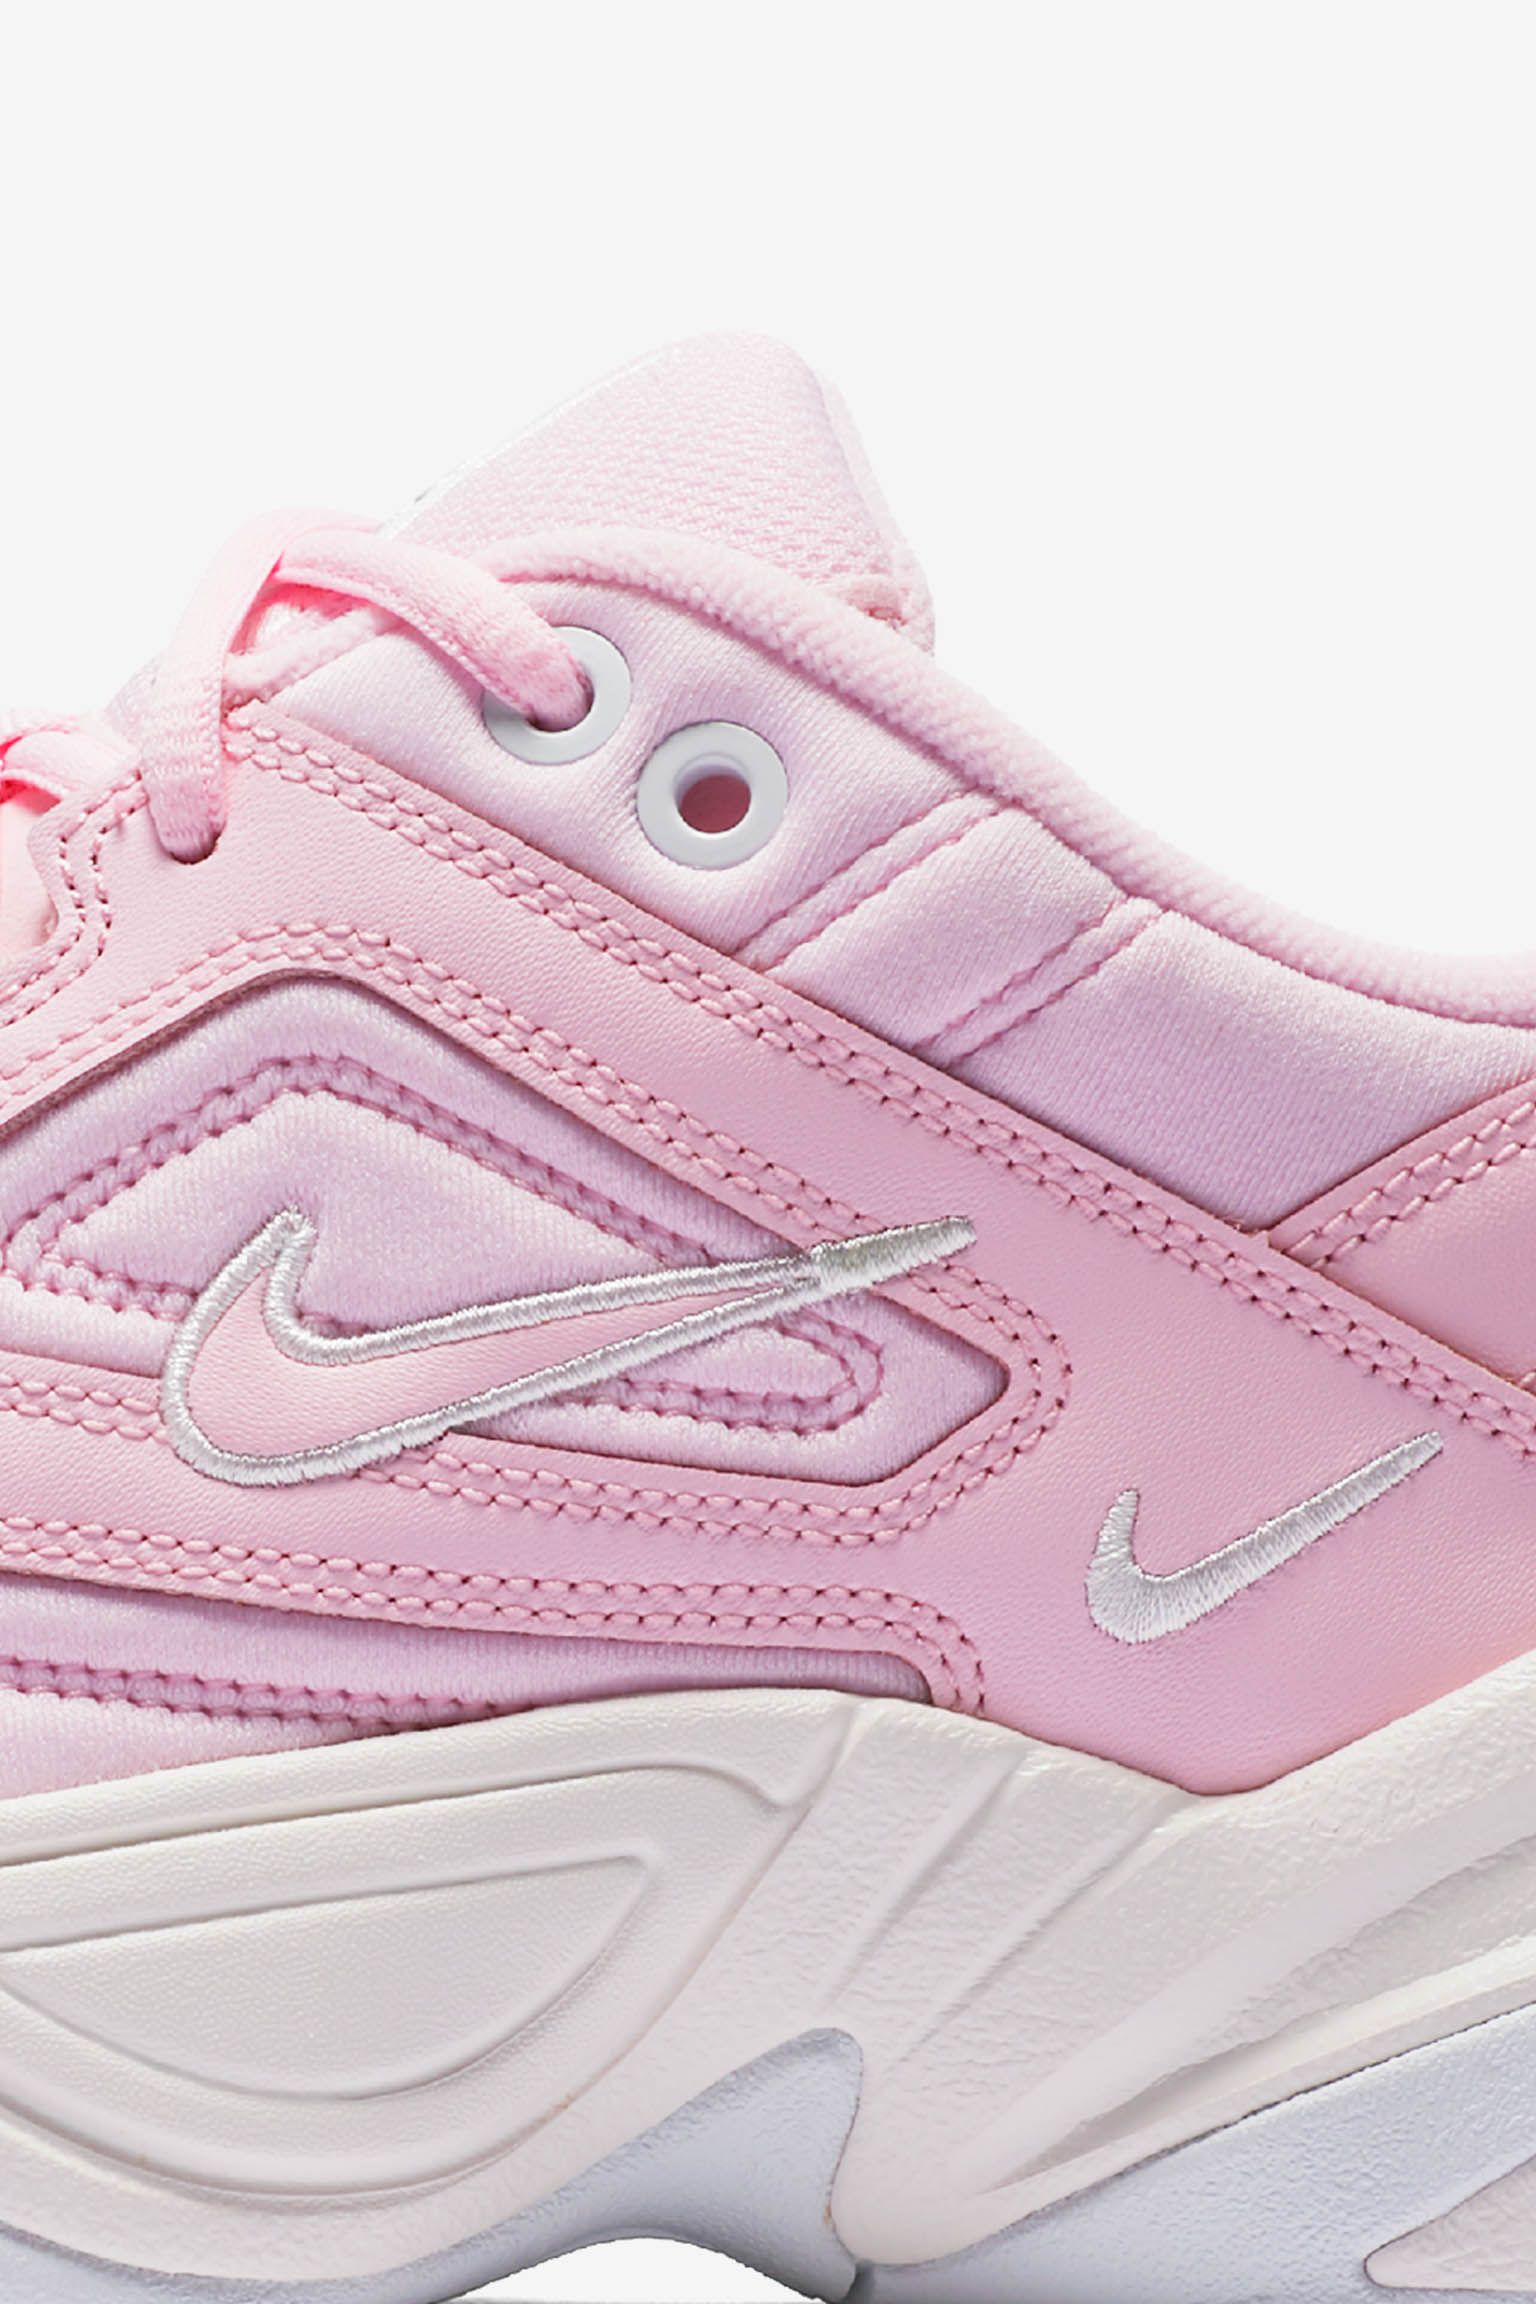 Nike Women's M2K Tekno 'Pink Foam & Phantom' Release Date. Nike SNKRS خواتم سوليتير